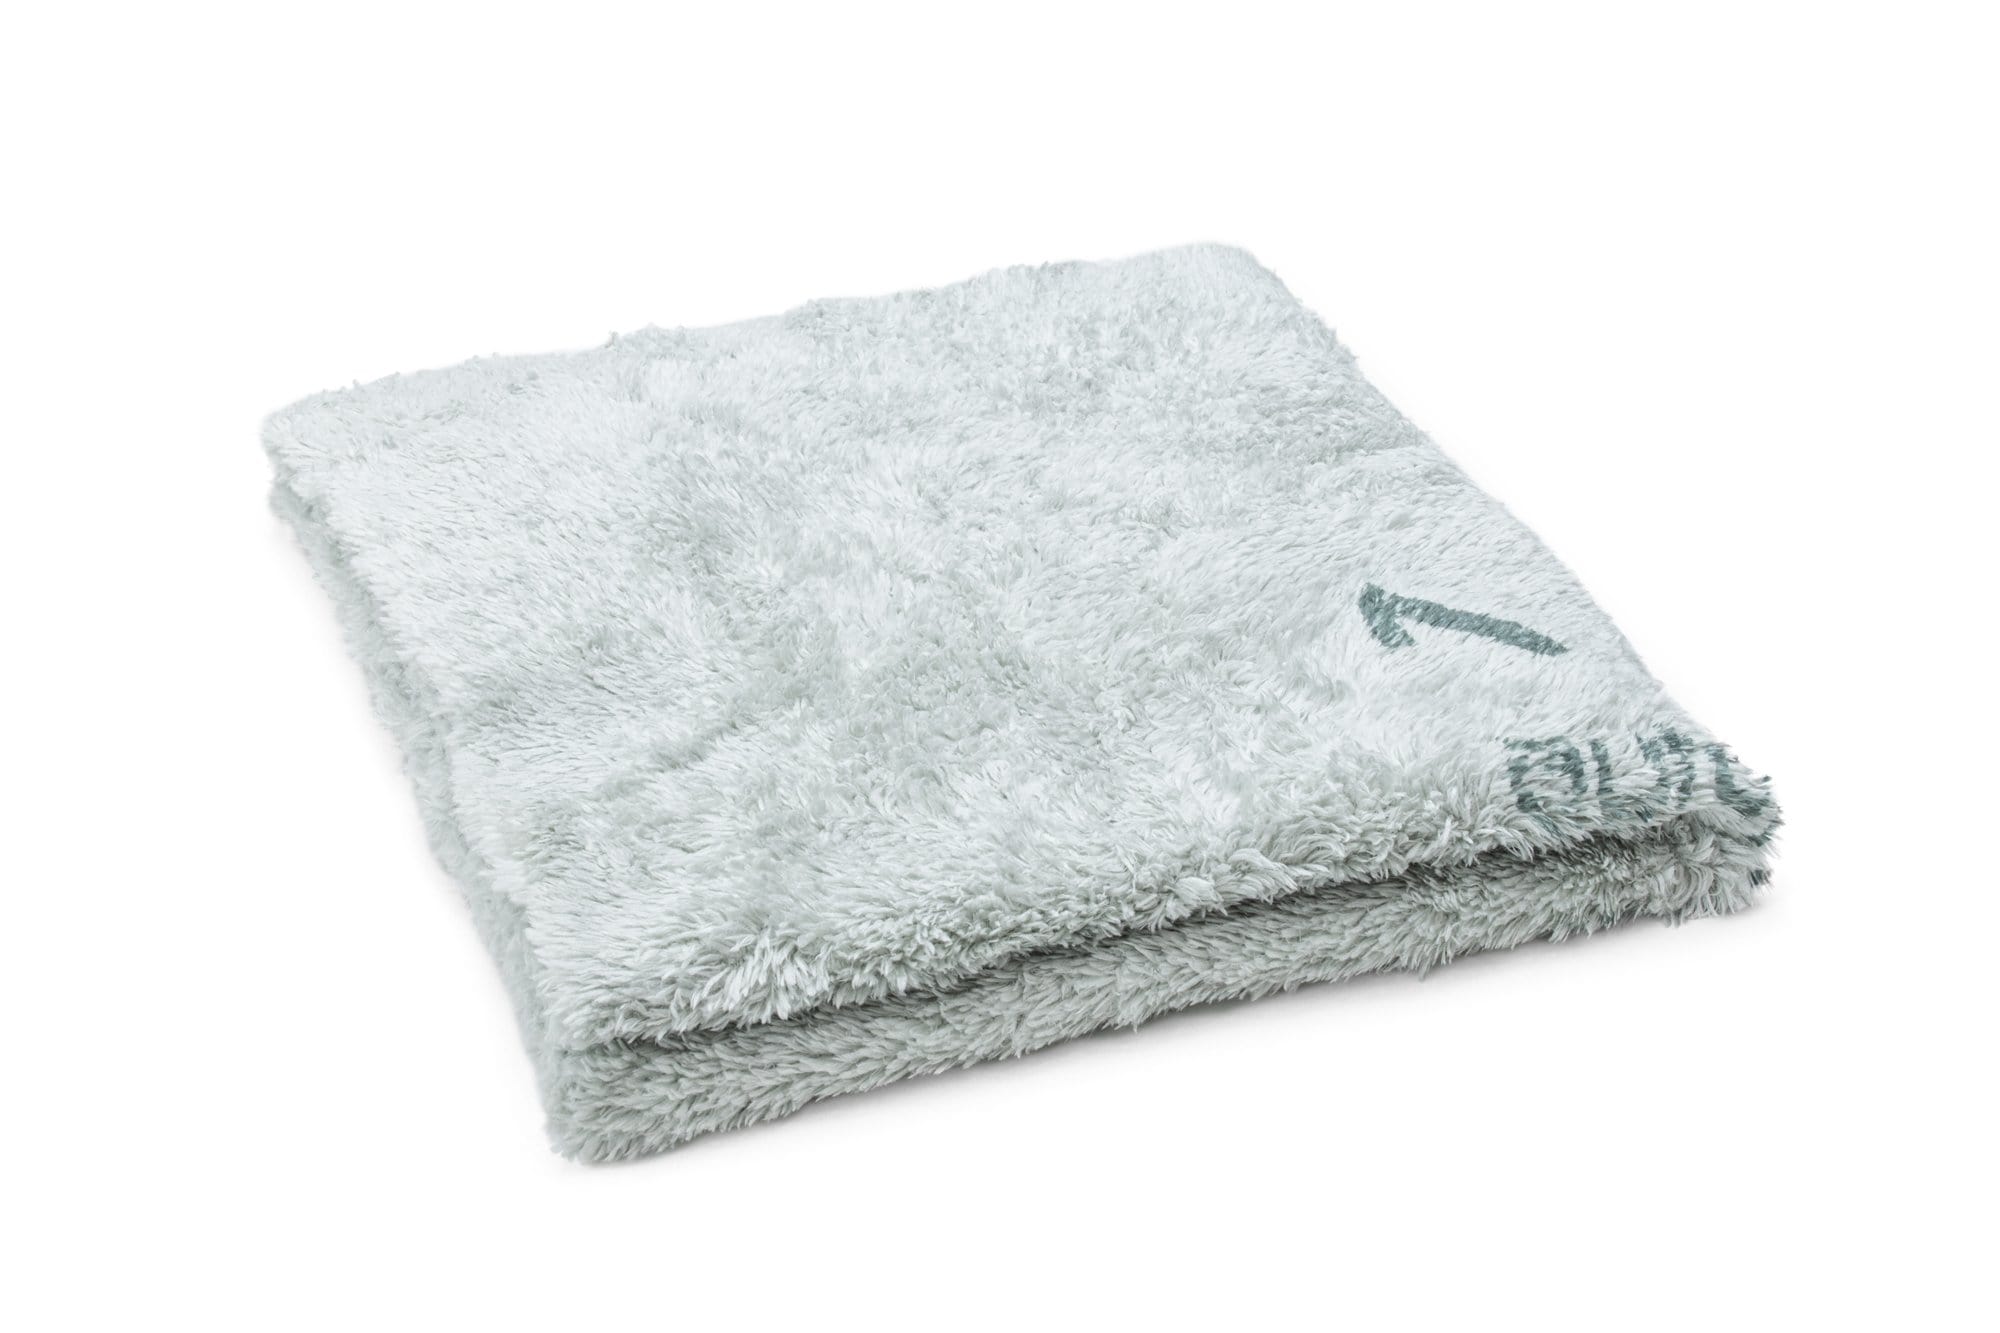 Autofiber [Korean Quadrant Wipe] Plush Microfiber Coating Leveling Towel (16 in. x 16 in., 350 gsm) - 10 pack